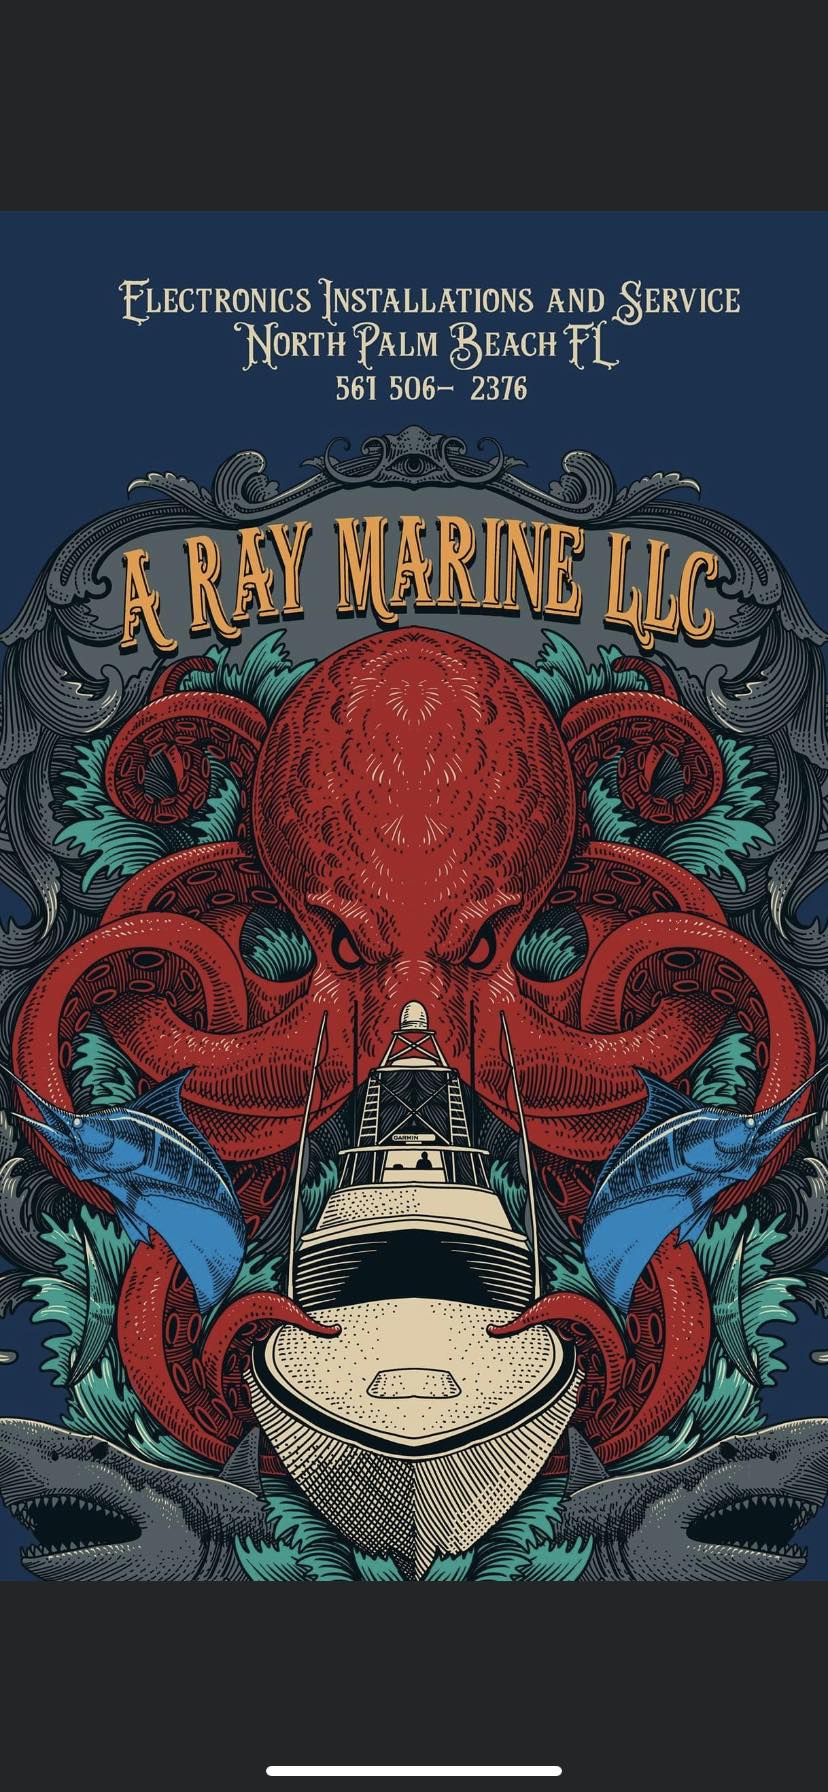 A Ray Marine LLC